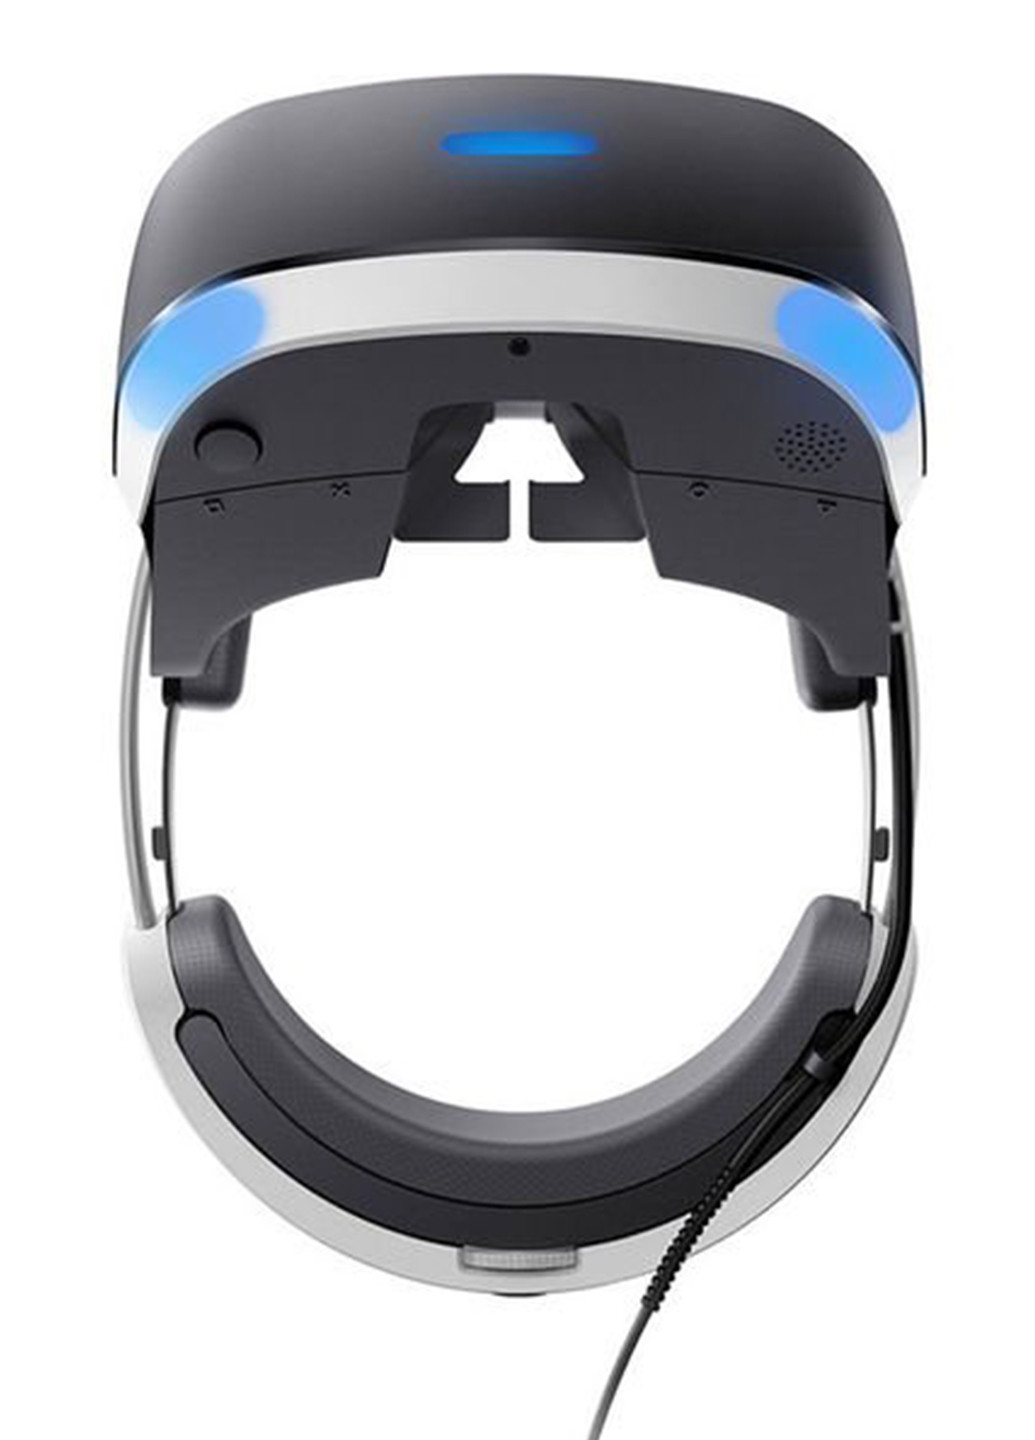 Очки виртуальной реальности PlayStation VR MegaPack (5 игр в комплекте) Sony CUH-ZVR2+VR MegaPack чёрно-белых